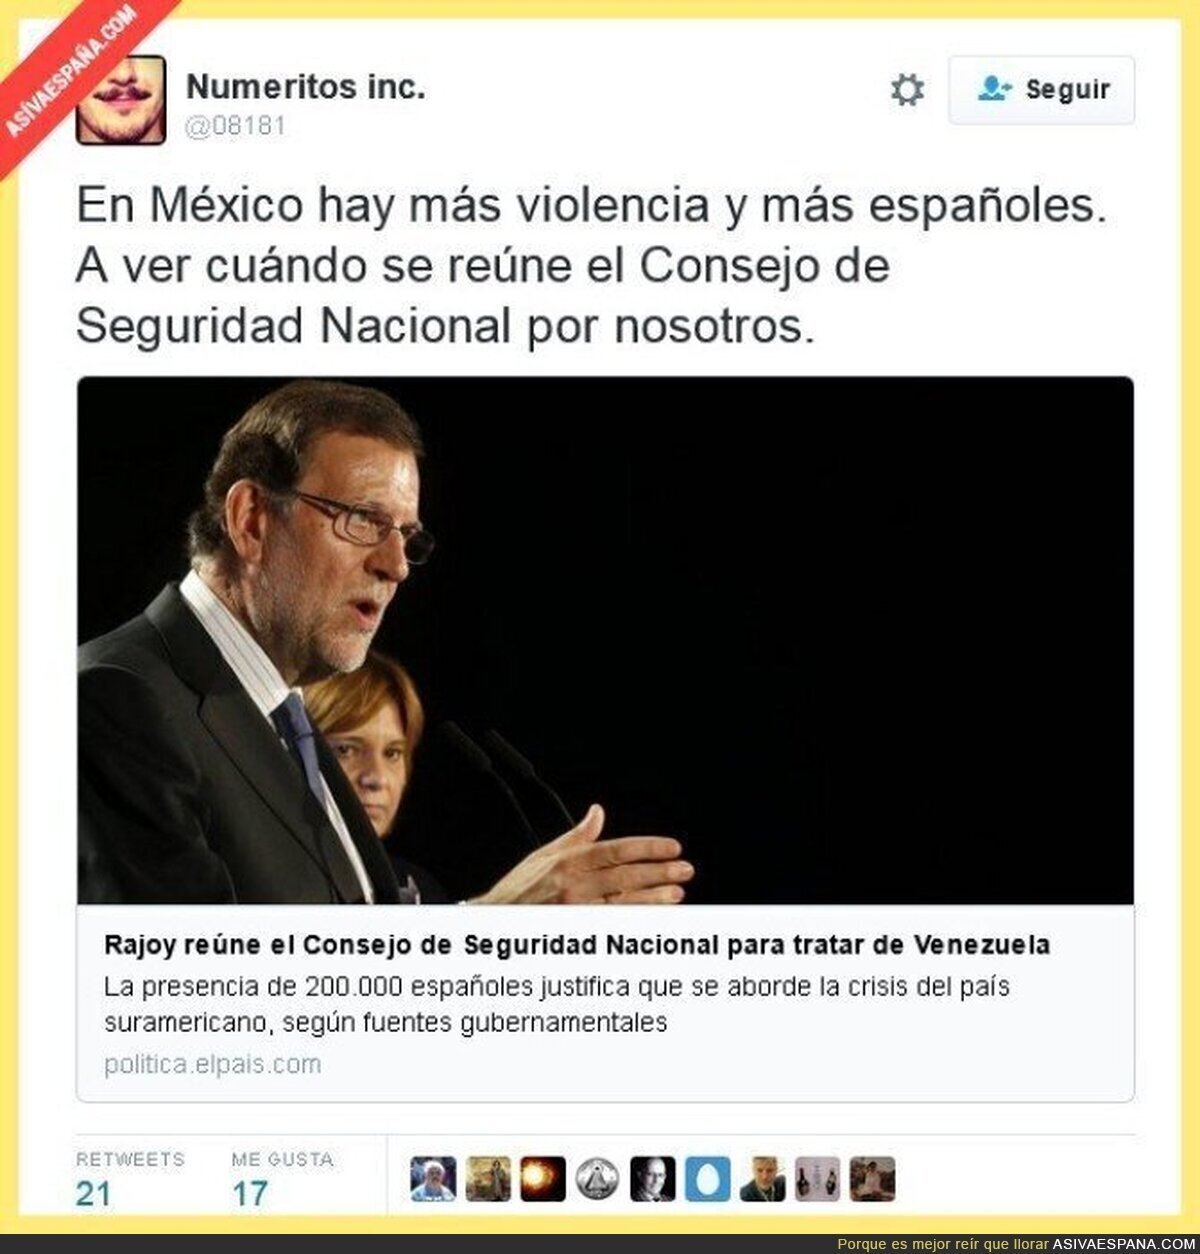 Rajoy no tiene límites en su afán de poder